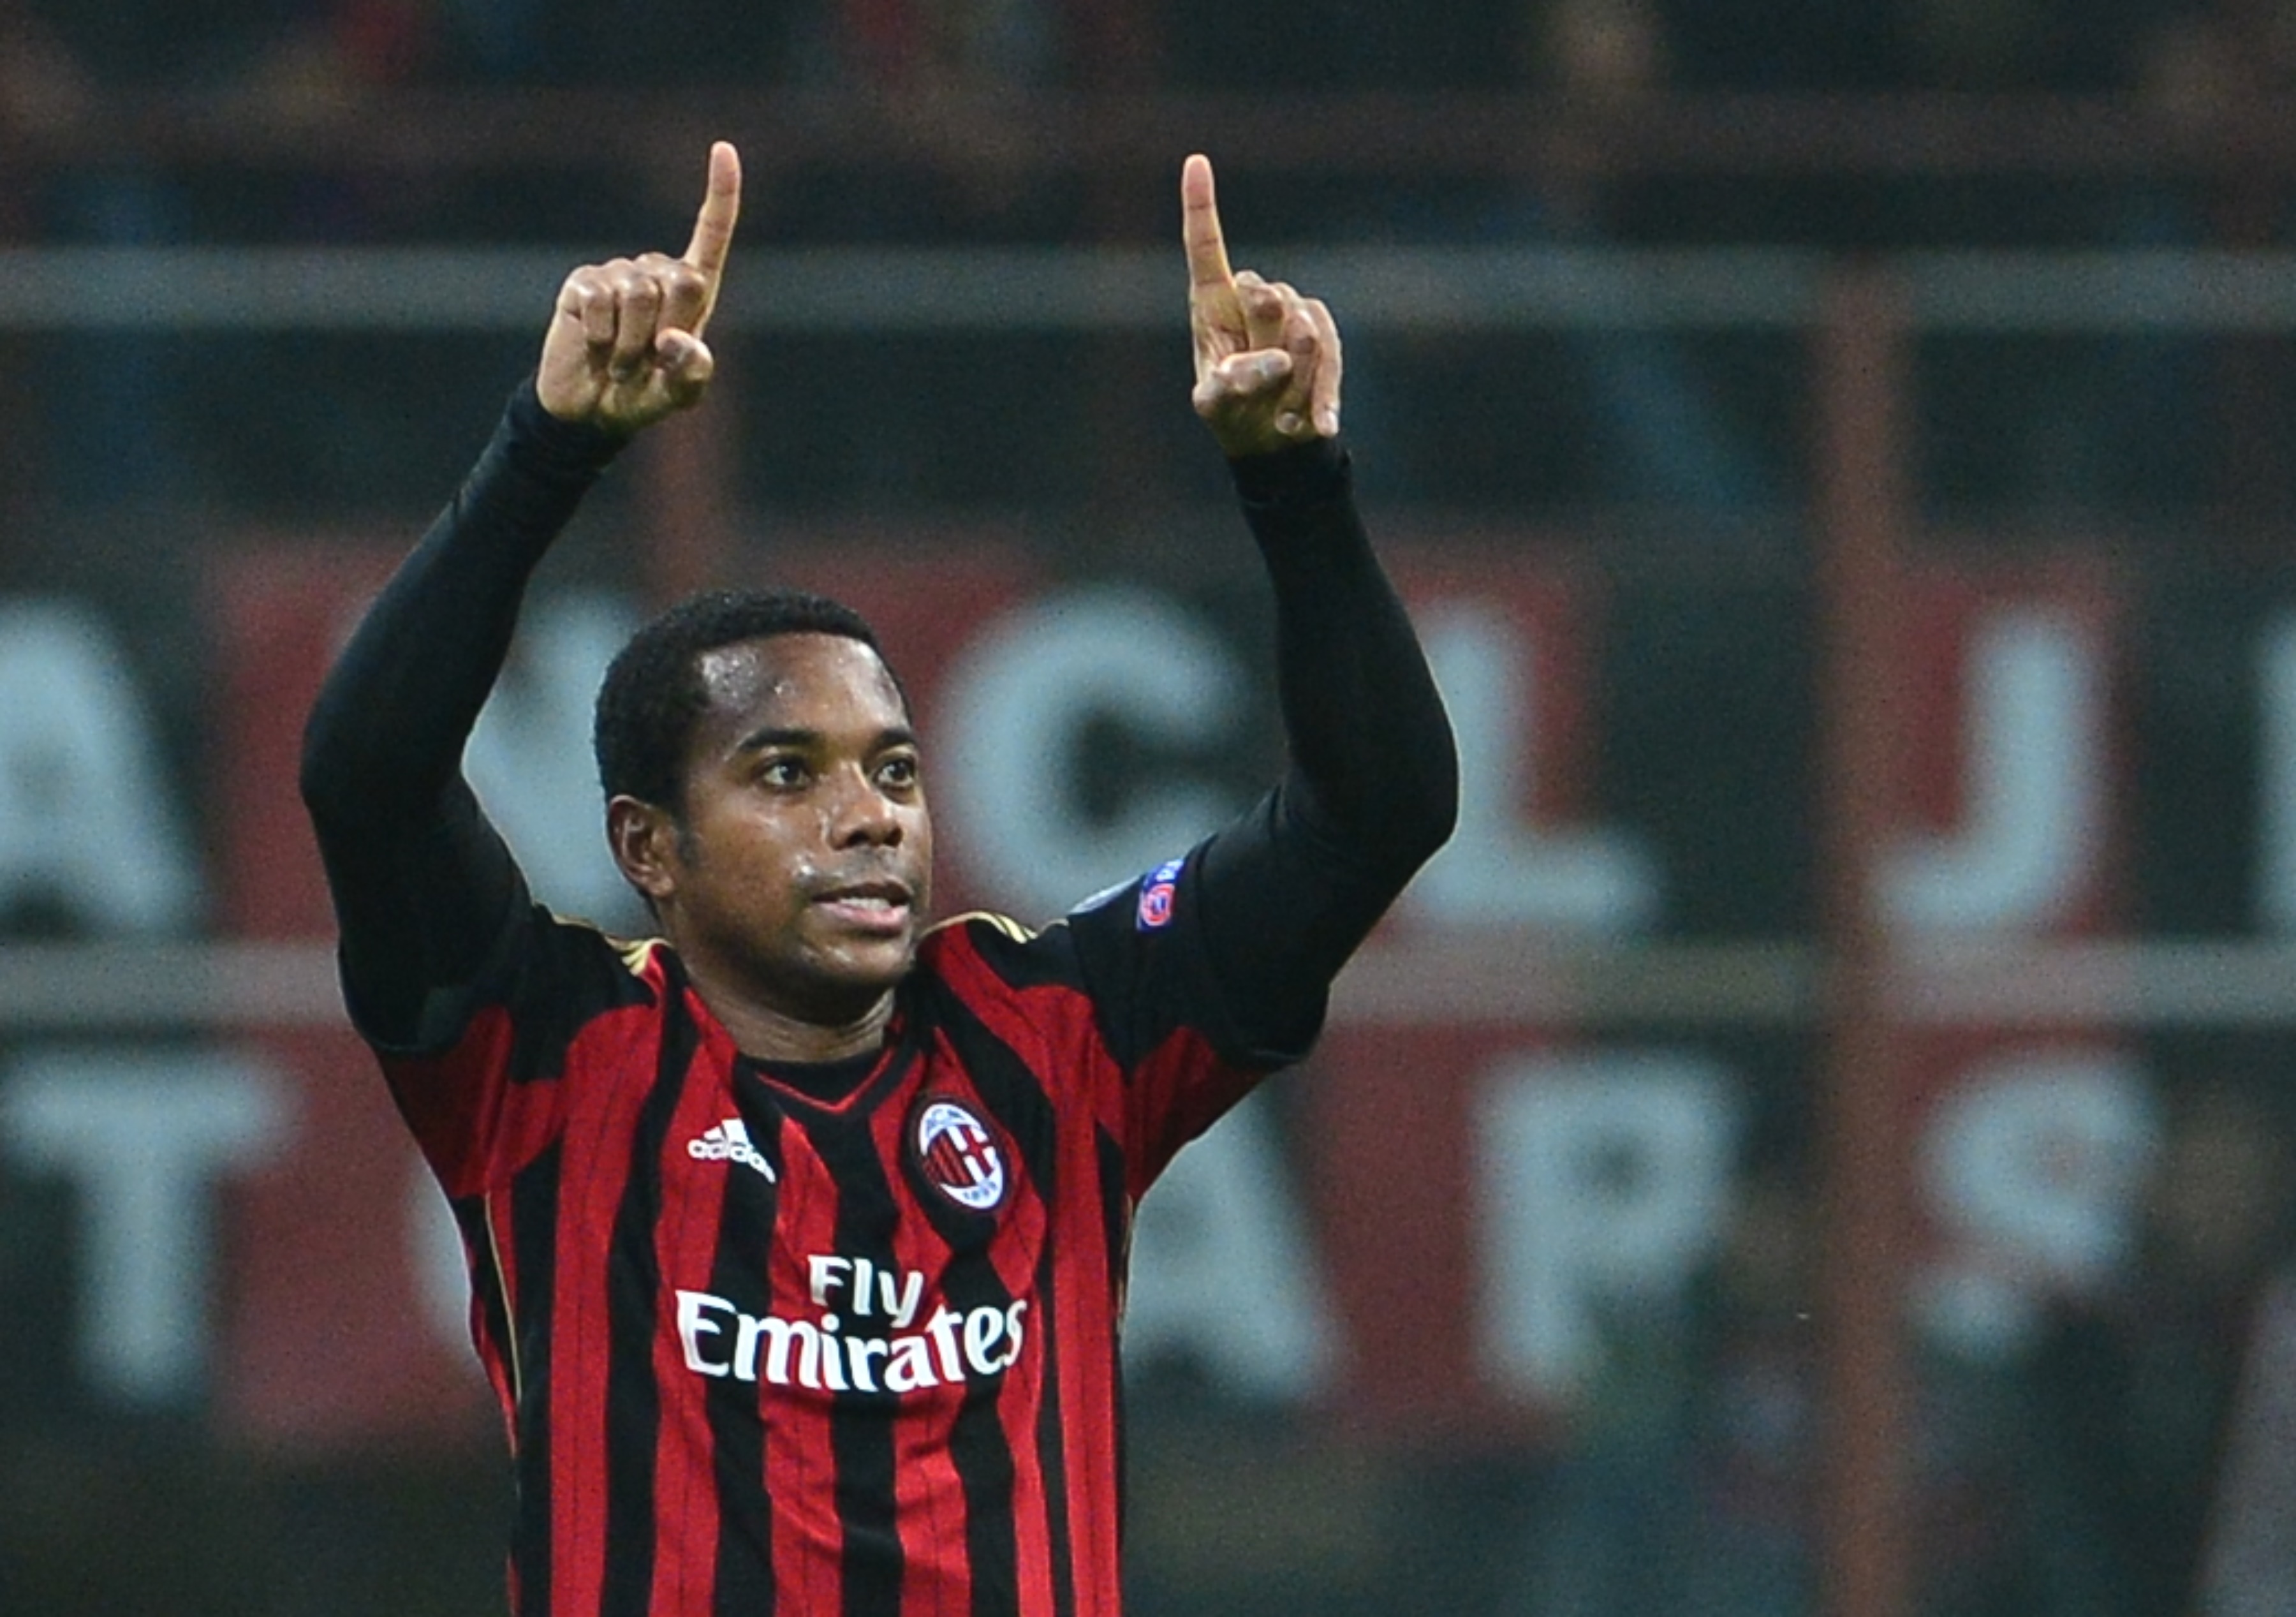 El caso por el que condenaron a Robinho ocurrió en Italia cuando jugaba con el Milán. Foto Prensa Libre: AFP.